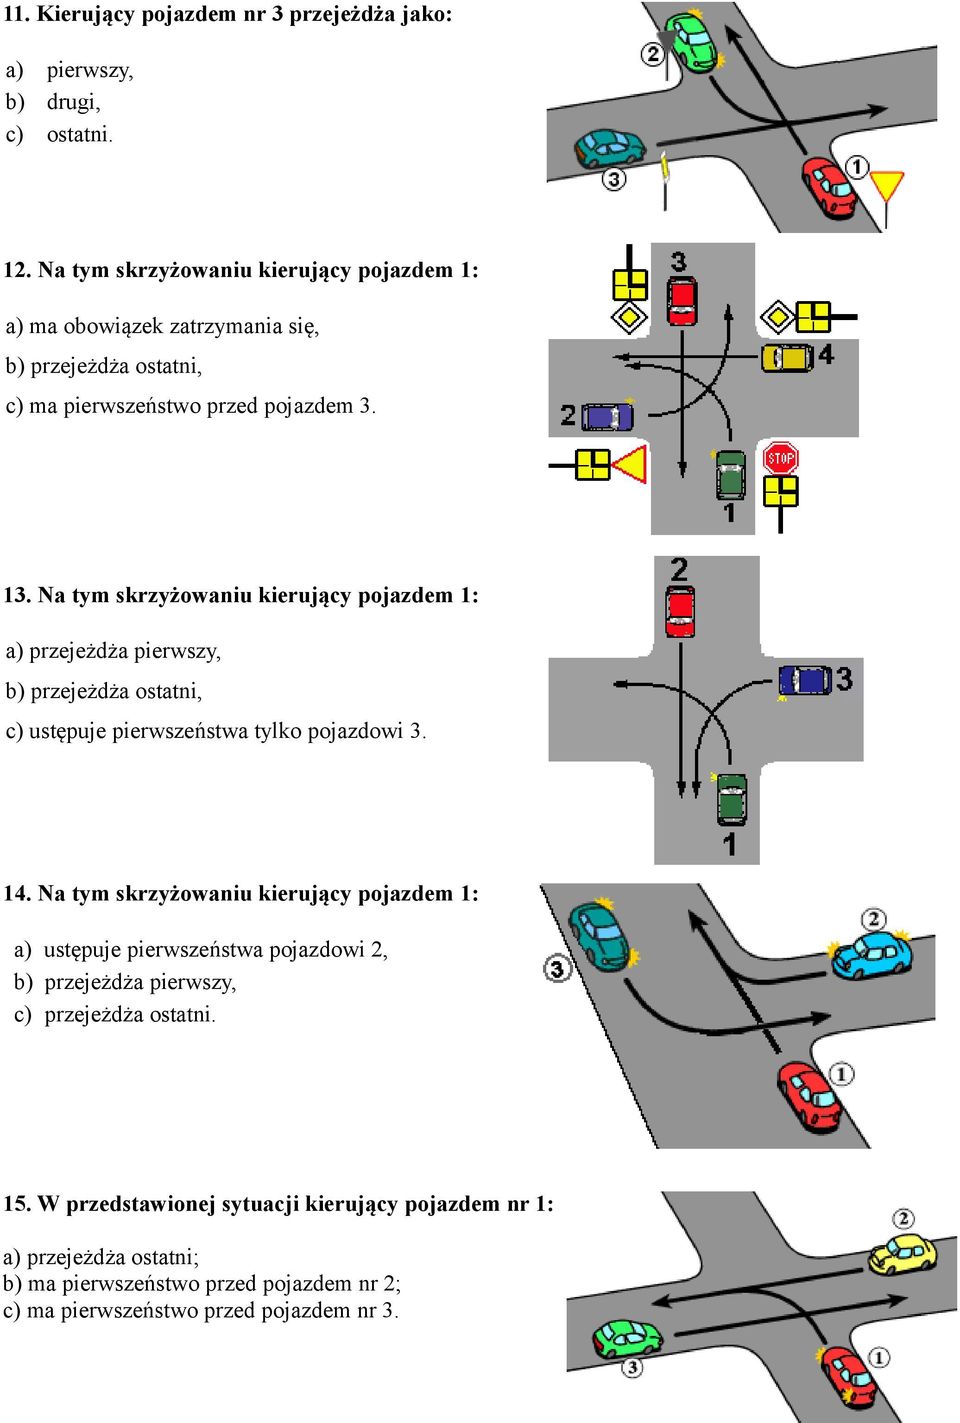 Na tym skrzyżowaniu kierujący pojazdem 1: a) przejeżdża pierwszy, b) przejeżdża ostatni, c) ustępuje pierwszeństwa tylko pojazdowi 3. 14.